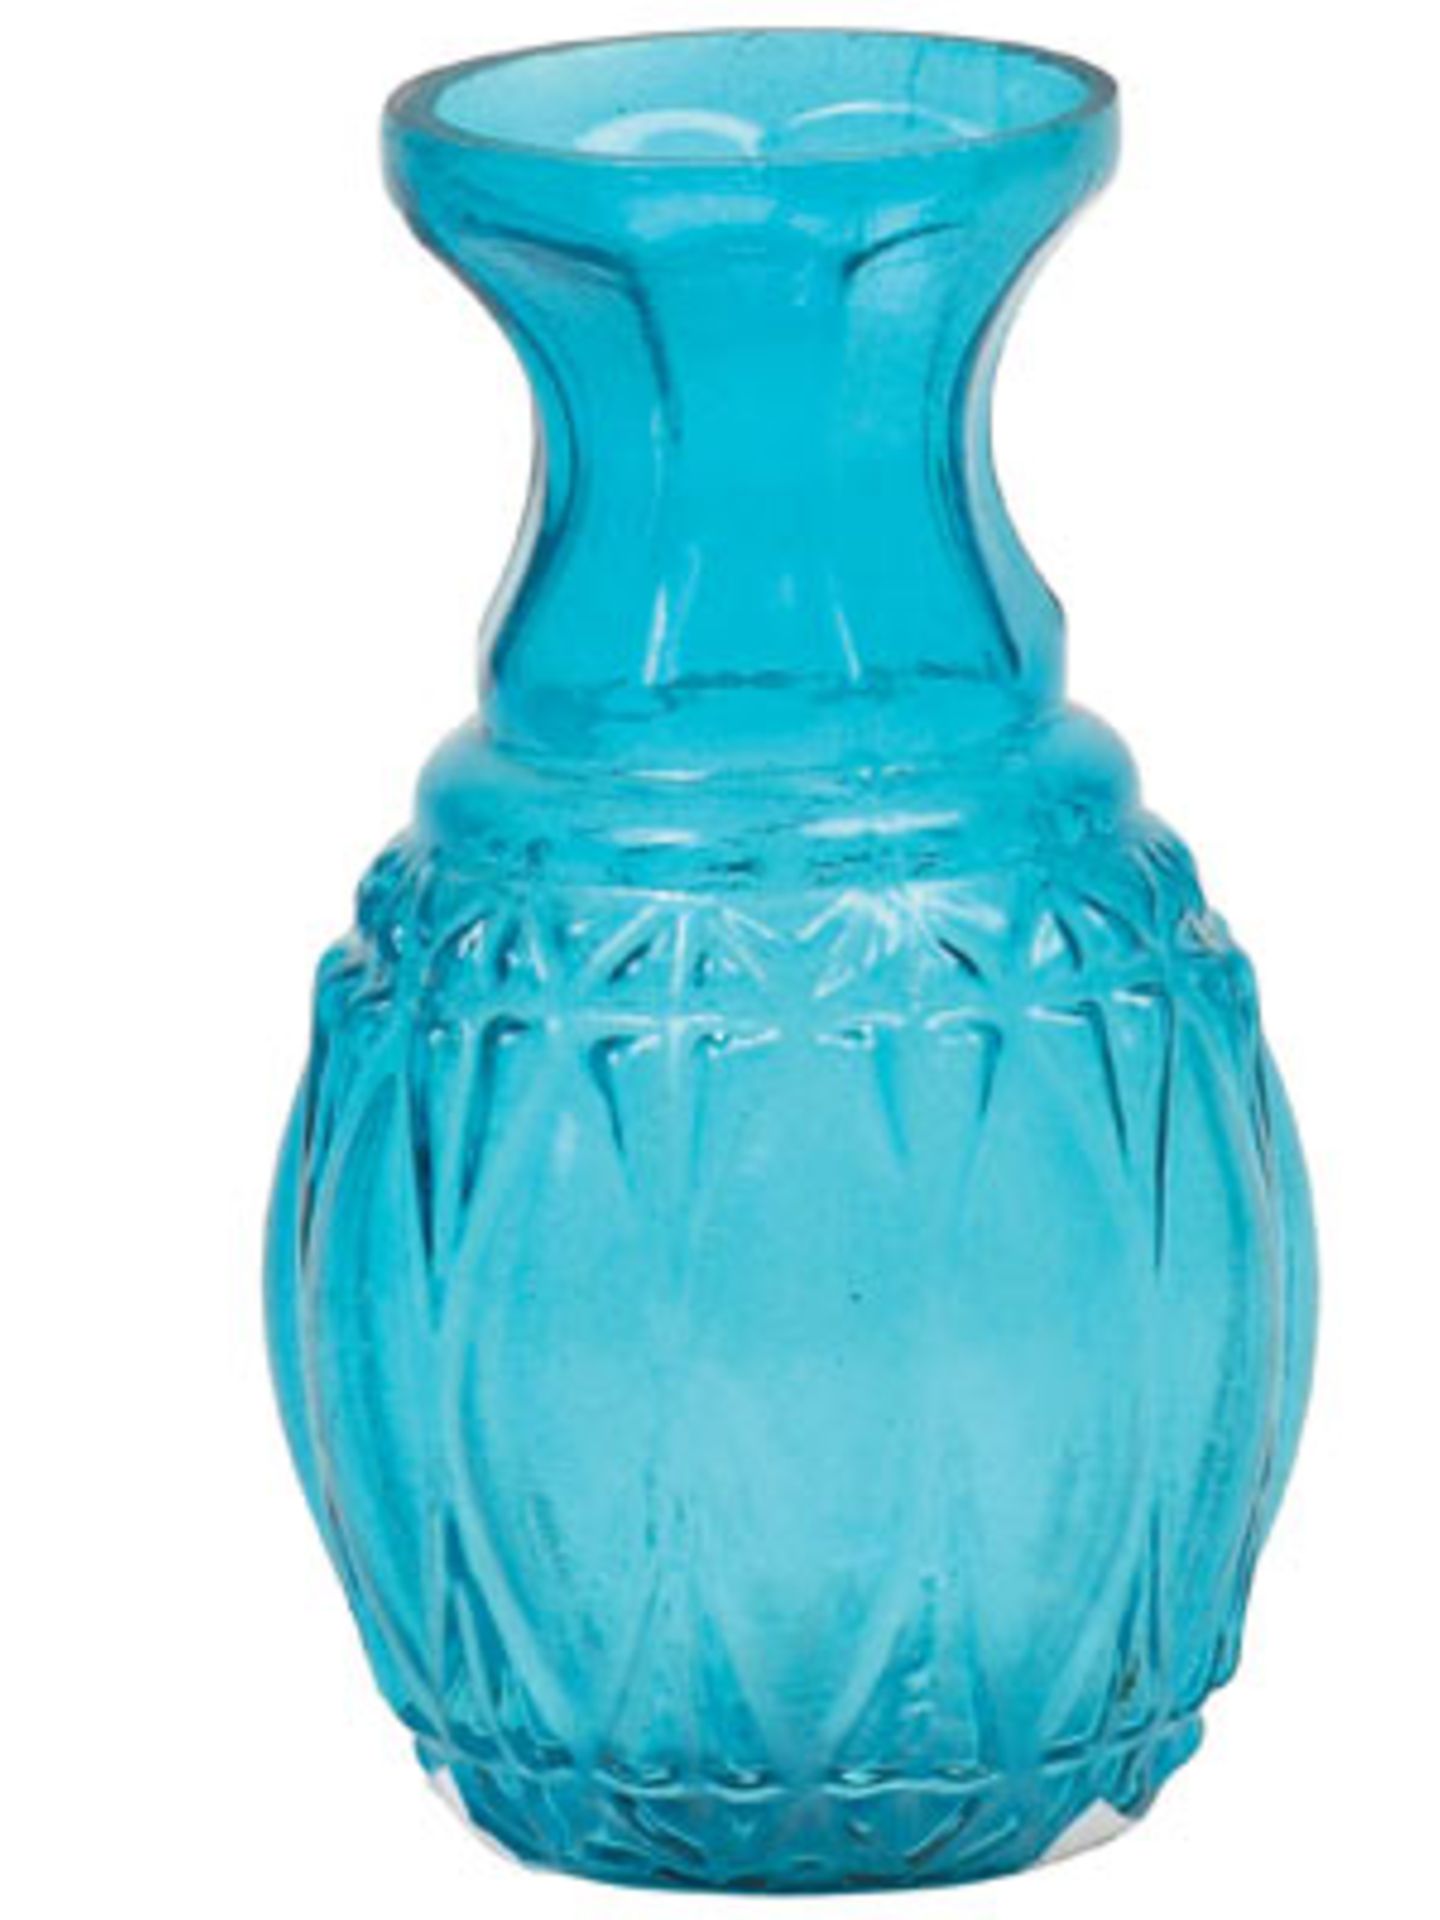 Glas-Vase    Süße, kleine Glas-Vase für einzelne Blumen. Höhe: ca. 7 cm, auch in grün erhältlich.     Preis: ca. 5,50 Euro, über  www.bertine.de